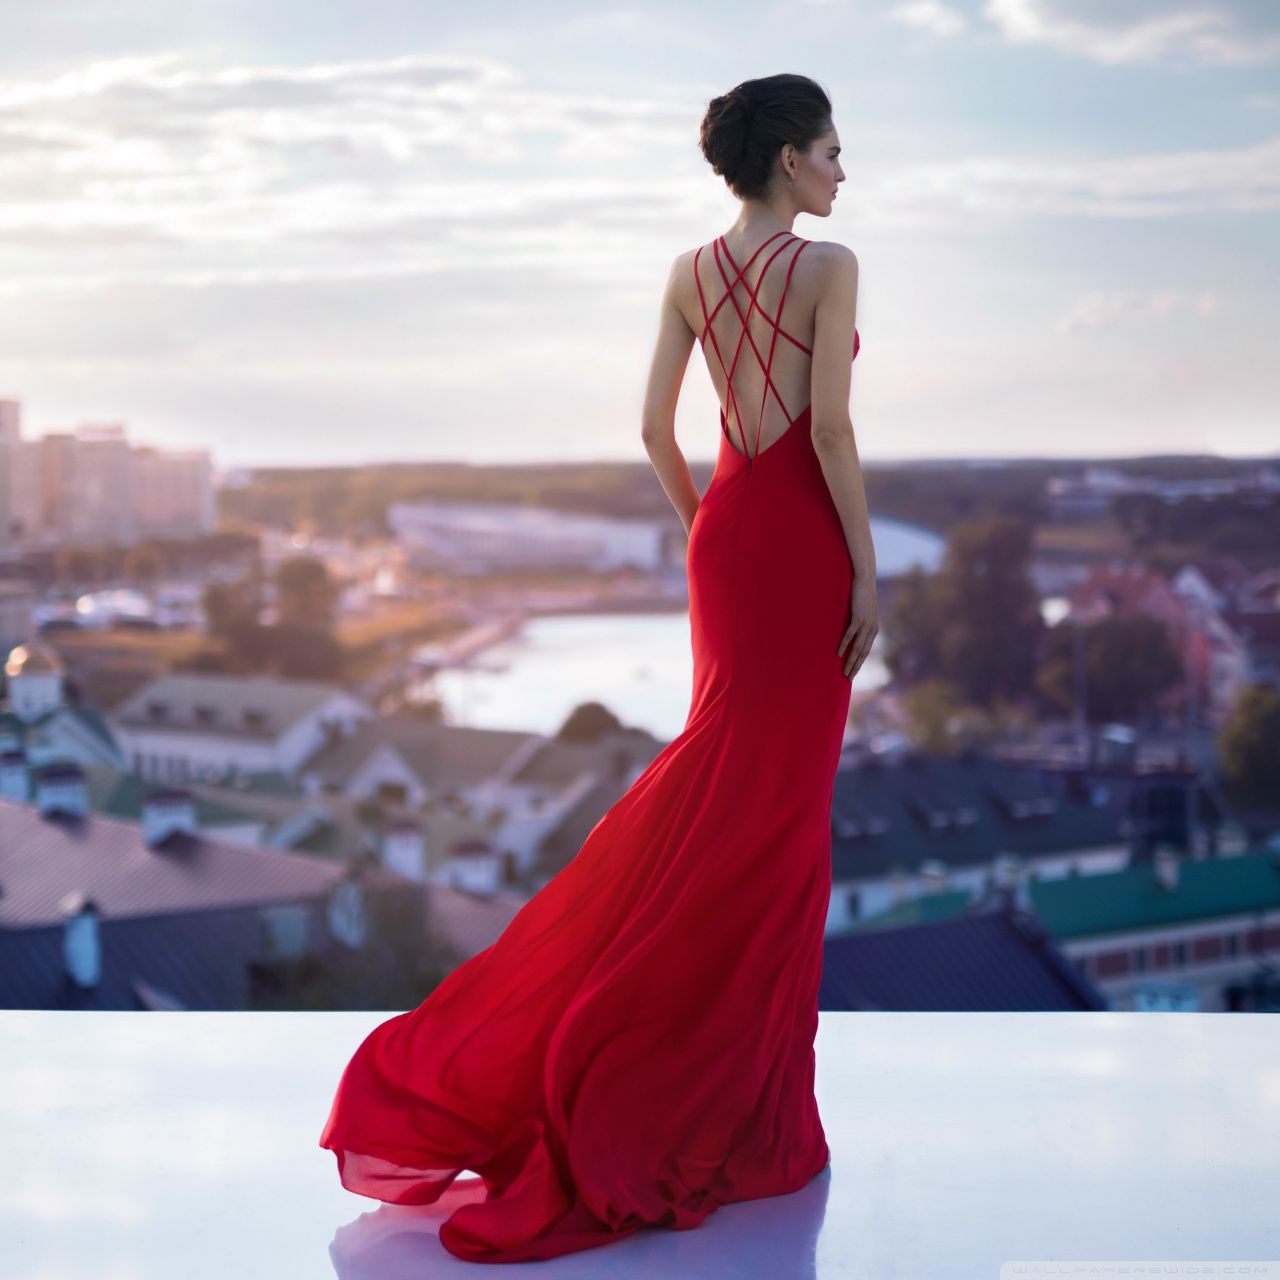 Fashion Model in a Beautiful Red Dress Ultra HD Desktop Background Wallpaper for: Widescreen & UltraWide Desktop & Laptop, Tablet